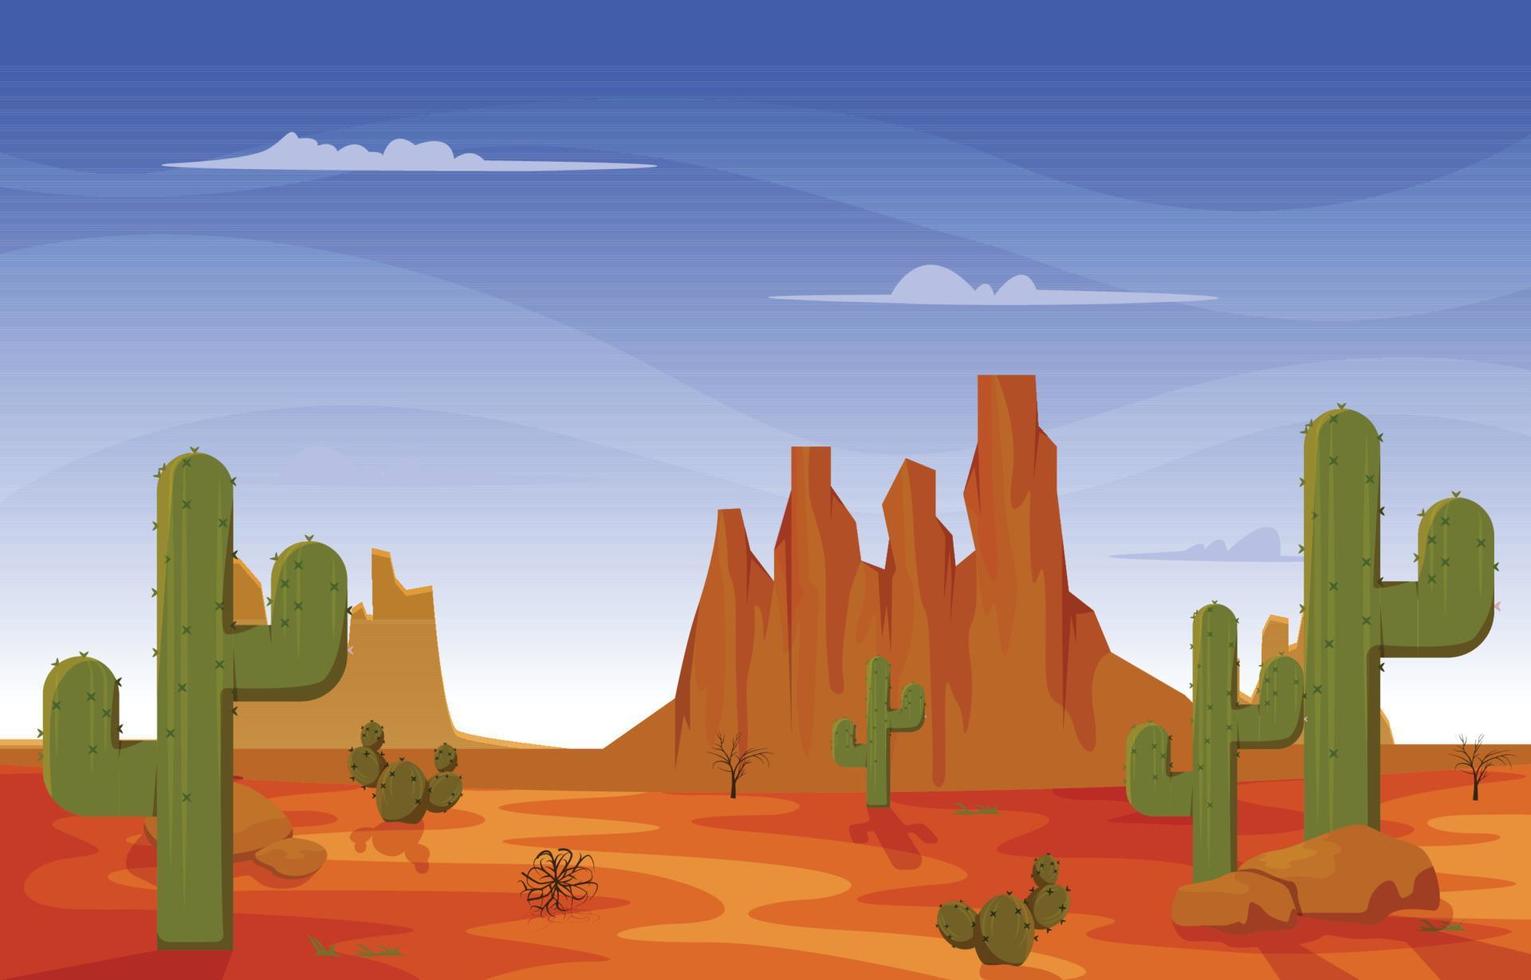 Texas California Mexico Desert Country Cactus Travel Vector Flat Design Illustration